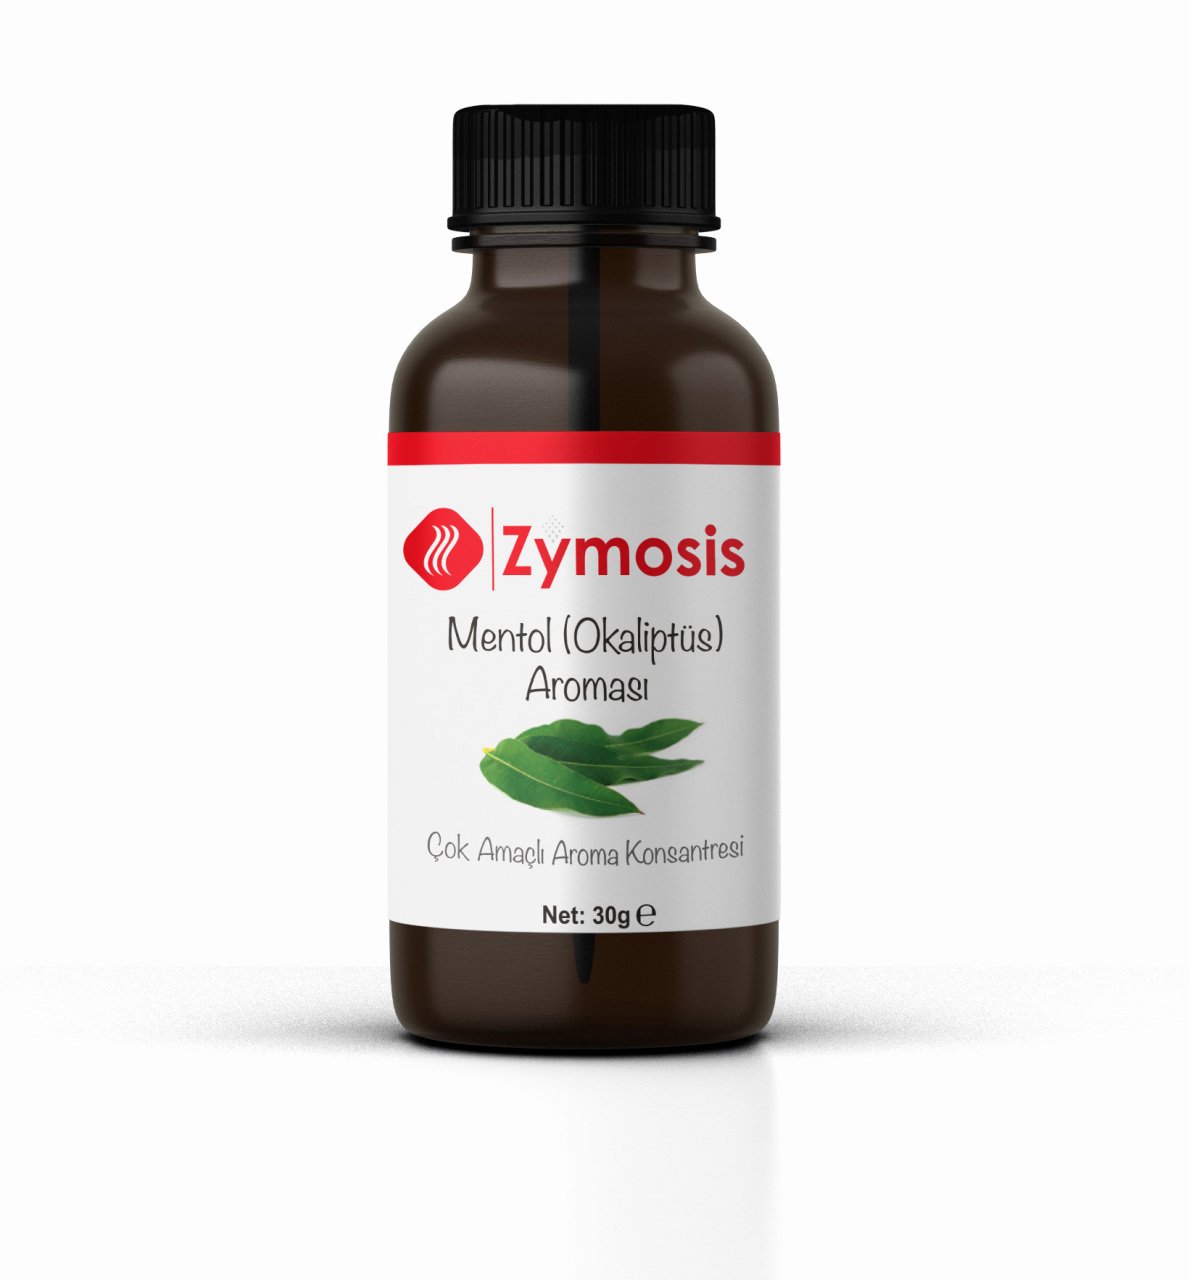 Zymosis Mentol (Okaliptüs) Aroması